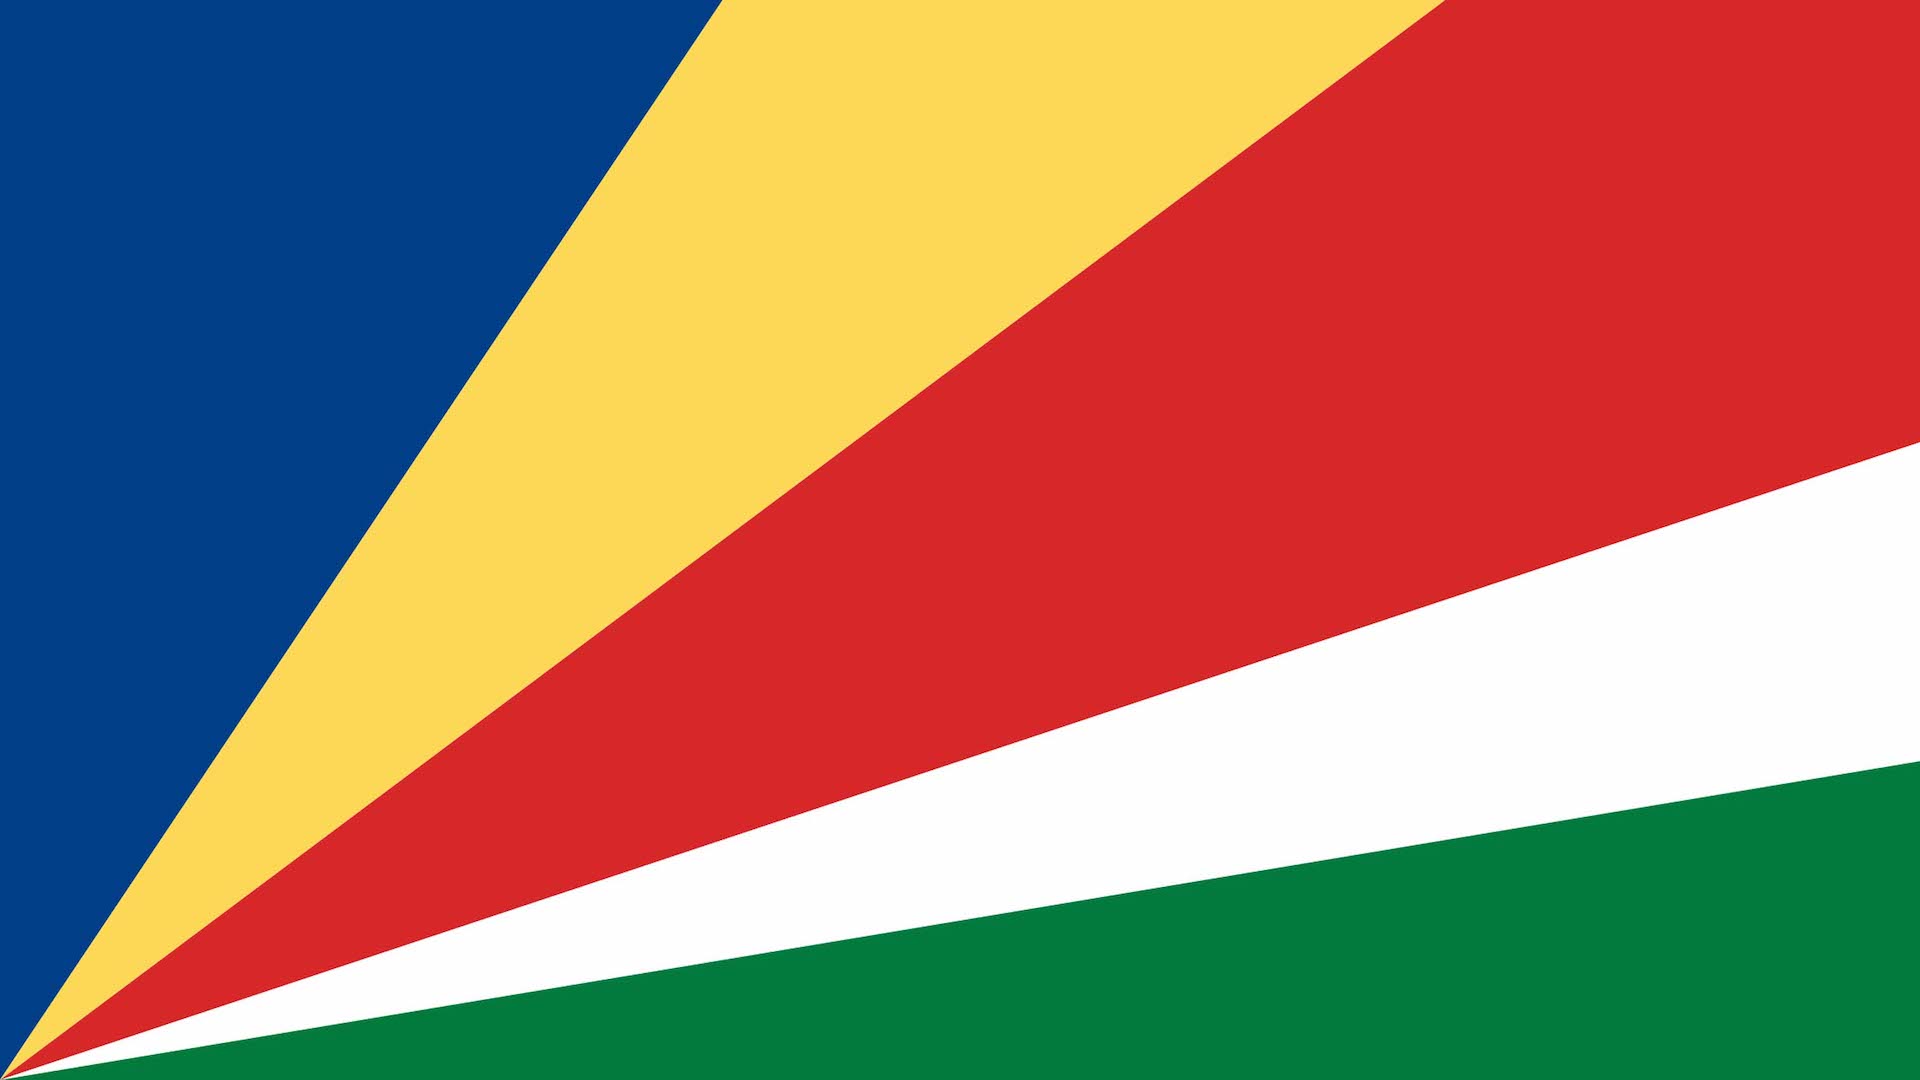 A five-colour flag